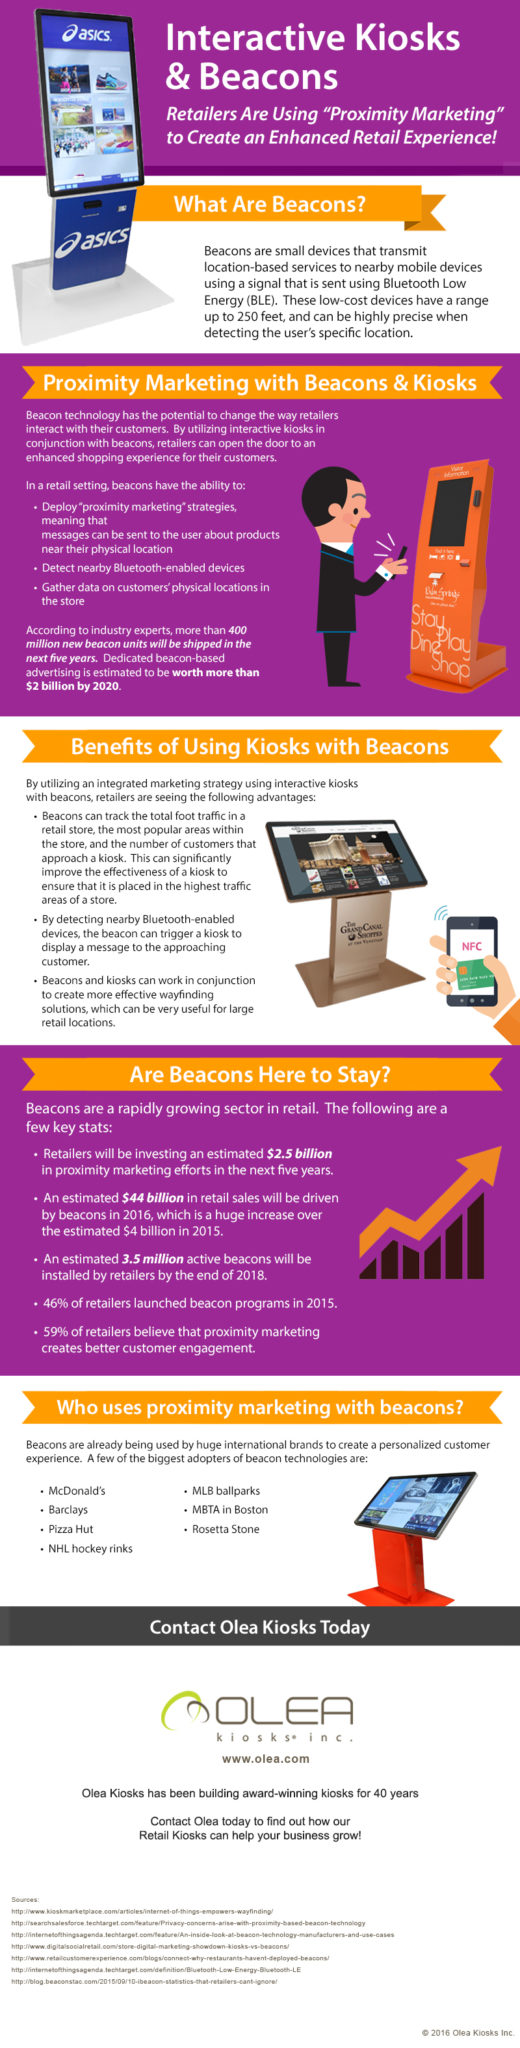 Interactive Kiosks & Beacons for Proximity Marketing